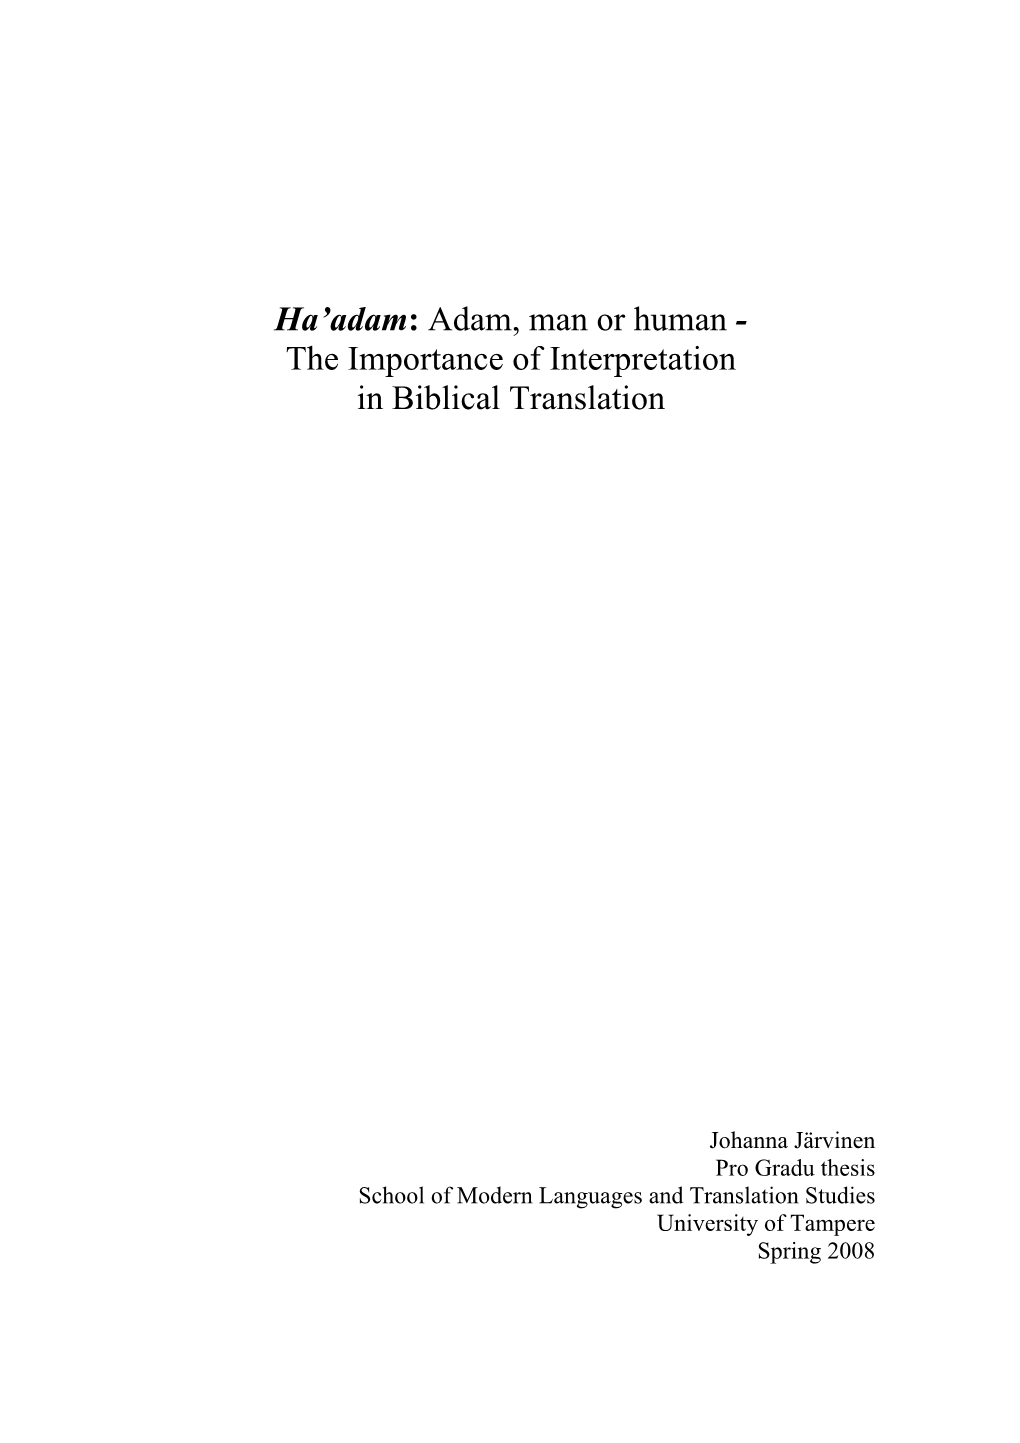 The Translations of Ha'adam